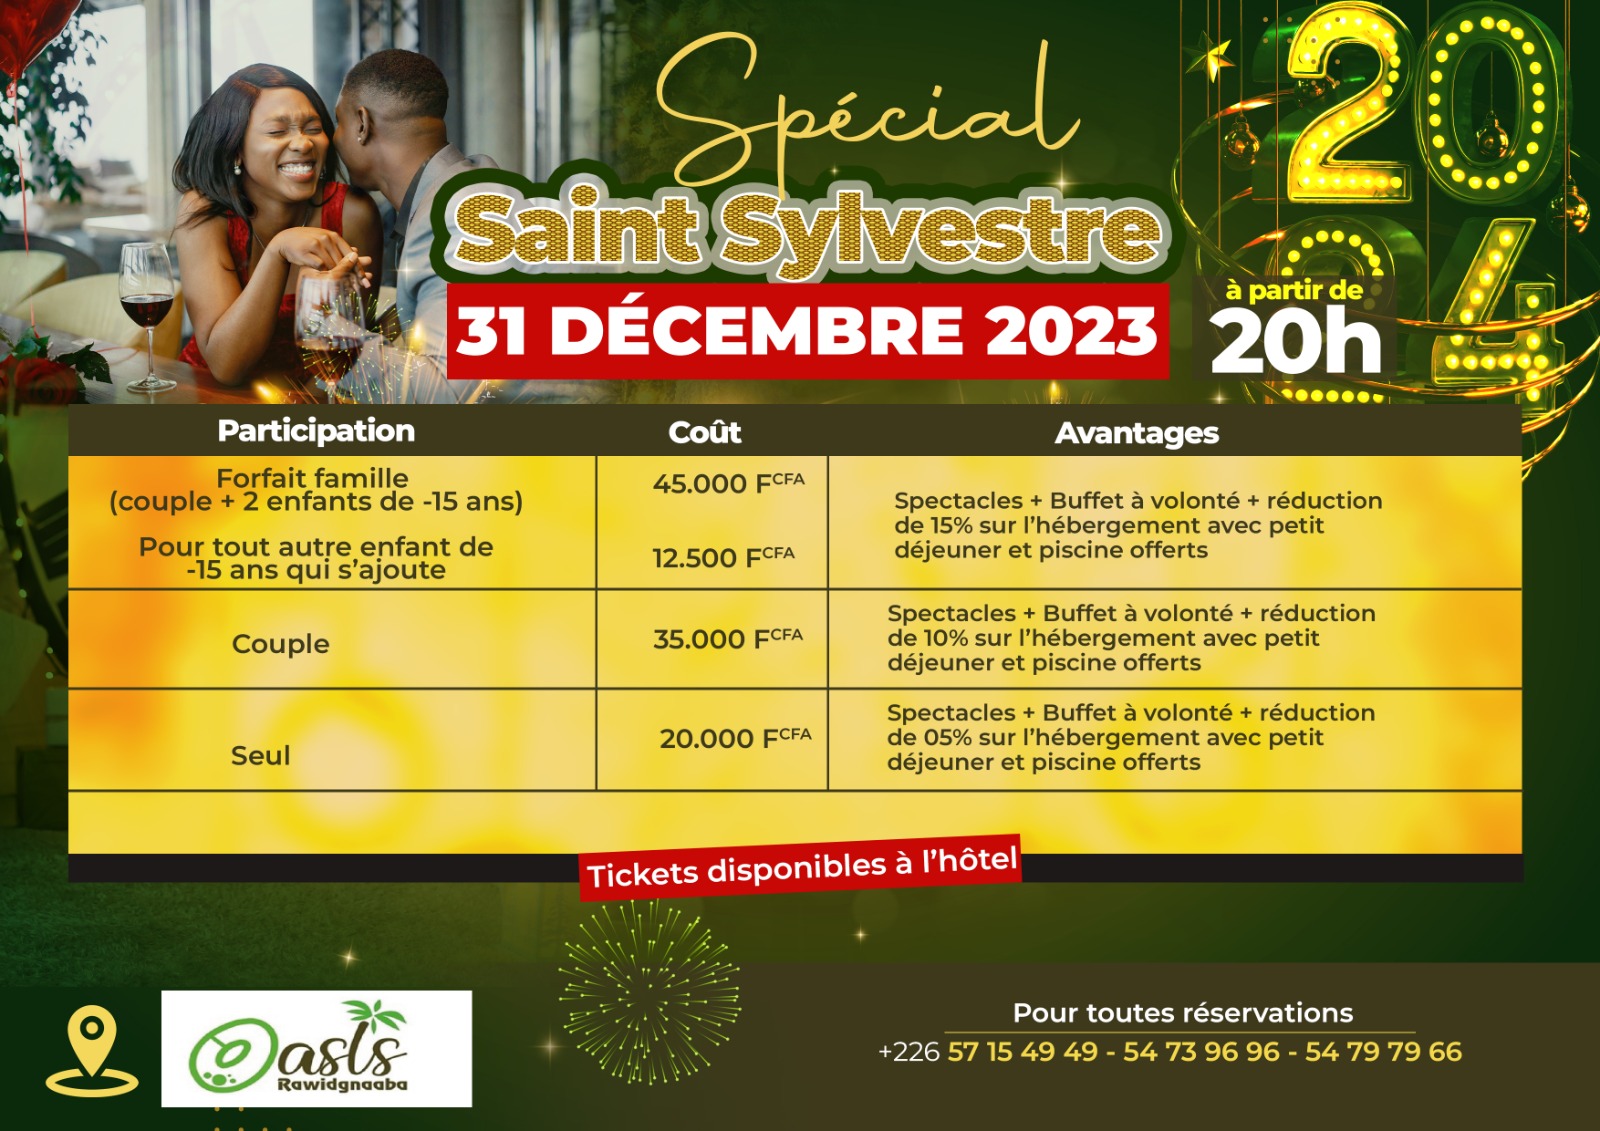 Oasis Rawidgnaaba de Tintilou : Spécial Saint Sylvestre (31 decembre 2023 et 1er janvier 2024) à partir de 20 heures 